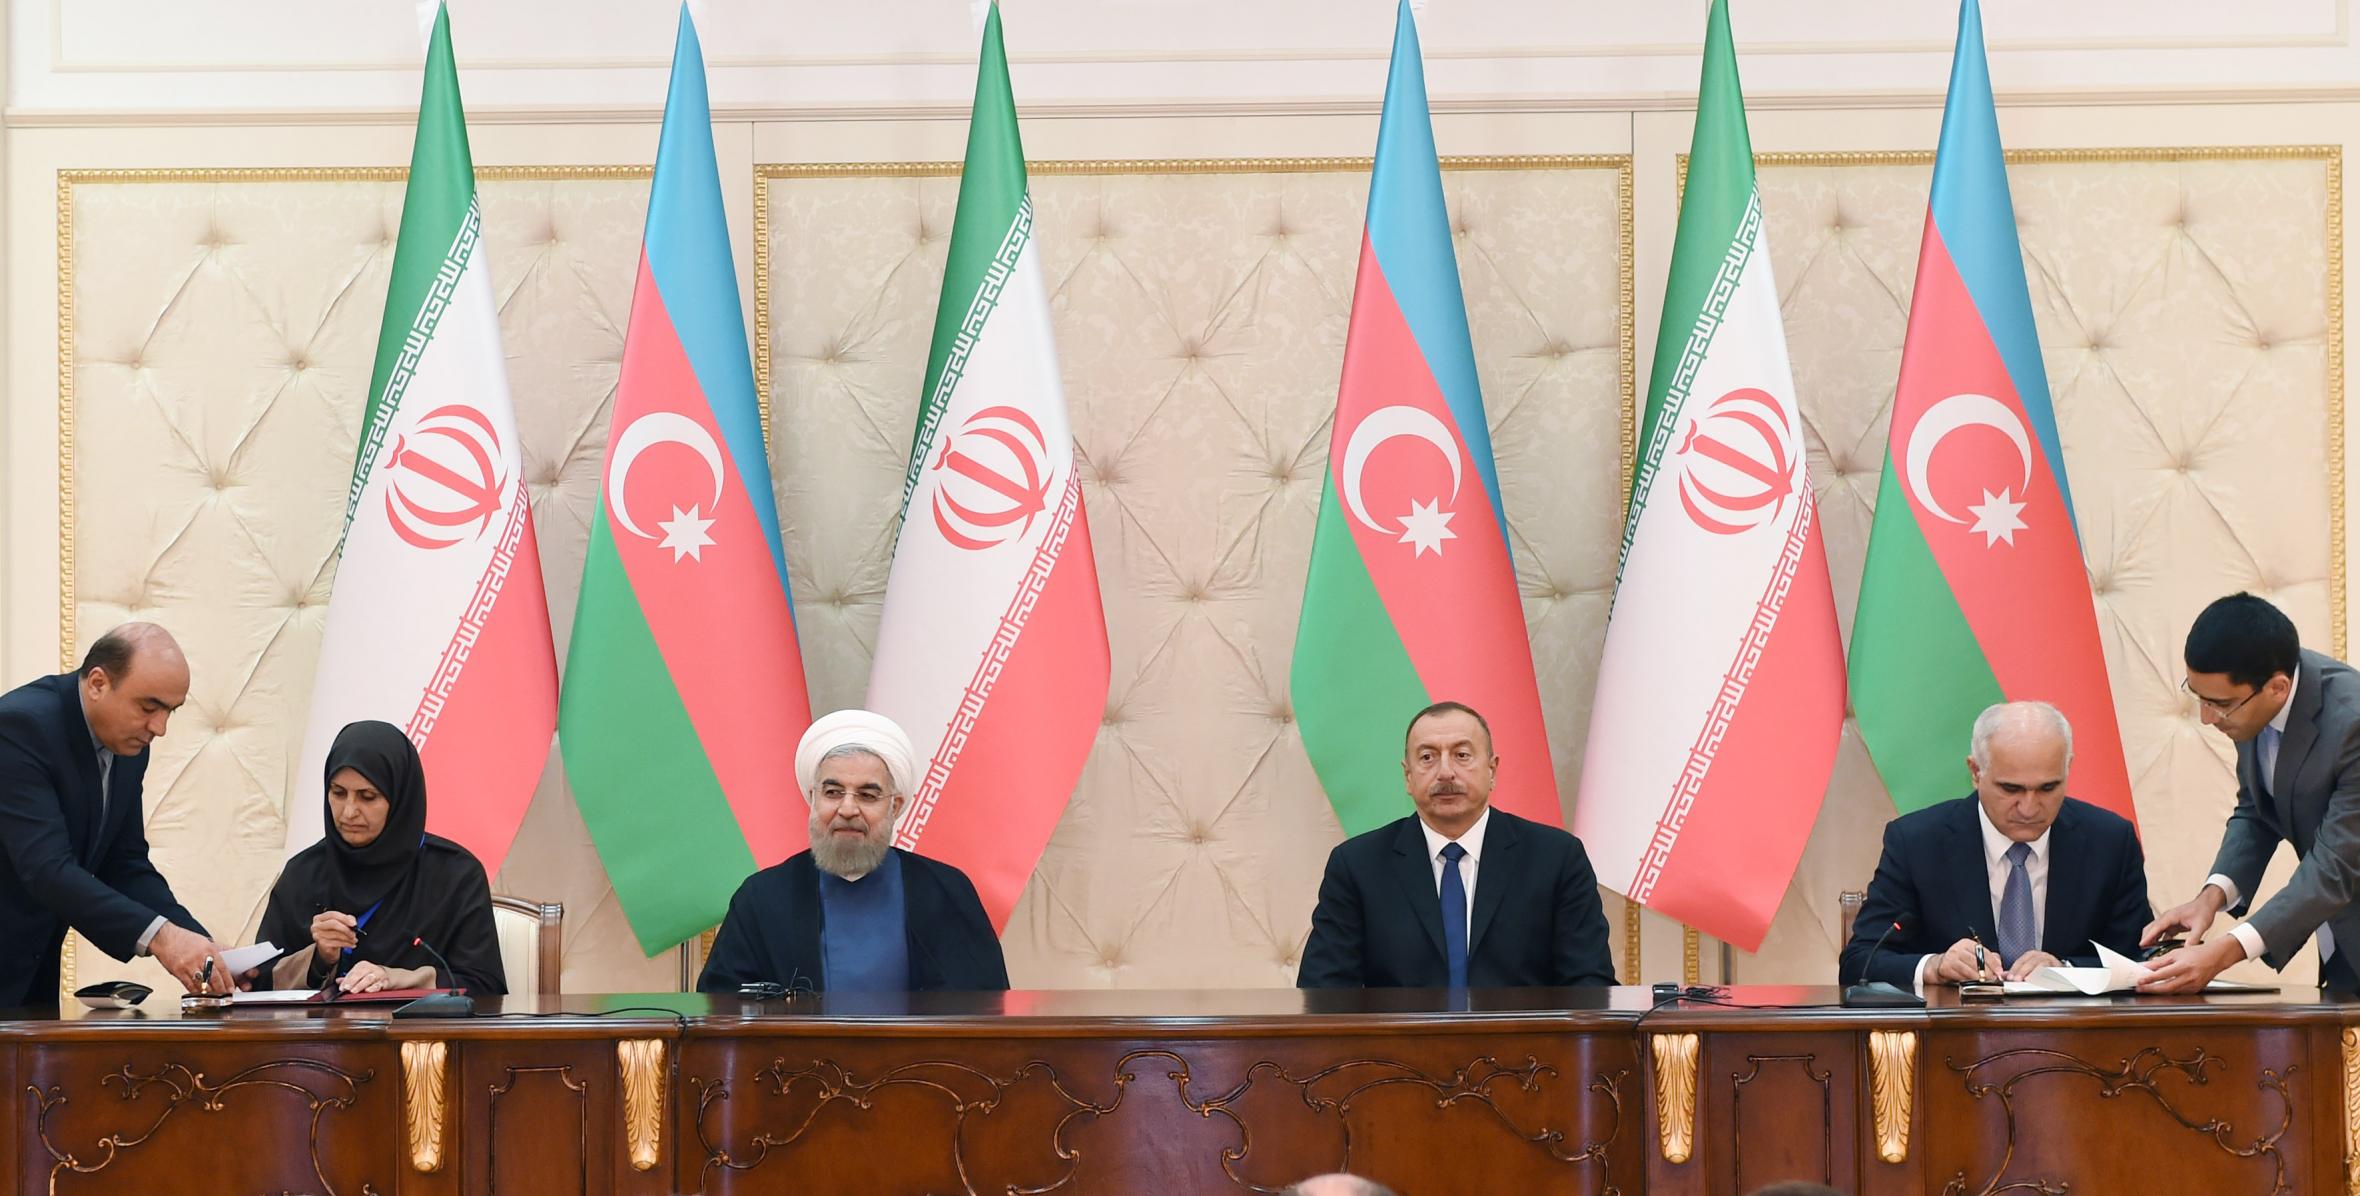 Состоялась церемония подписания азербайджано-иранских документов